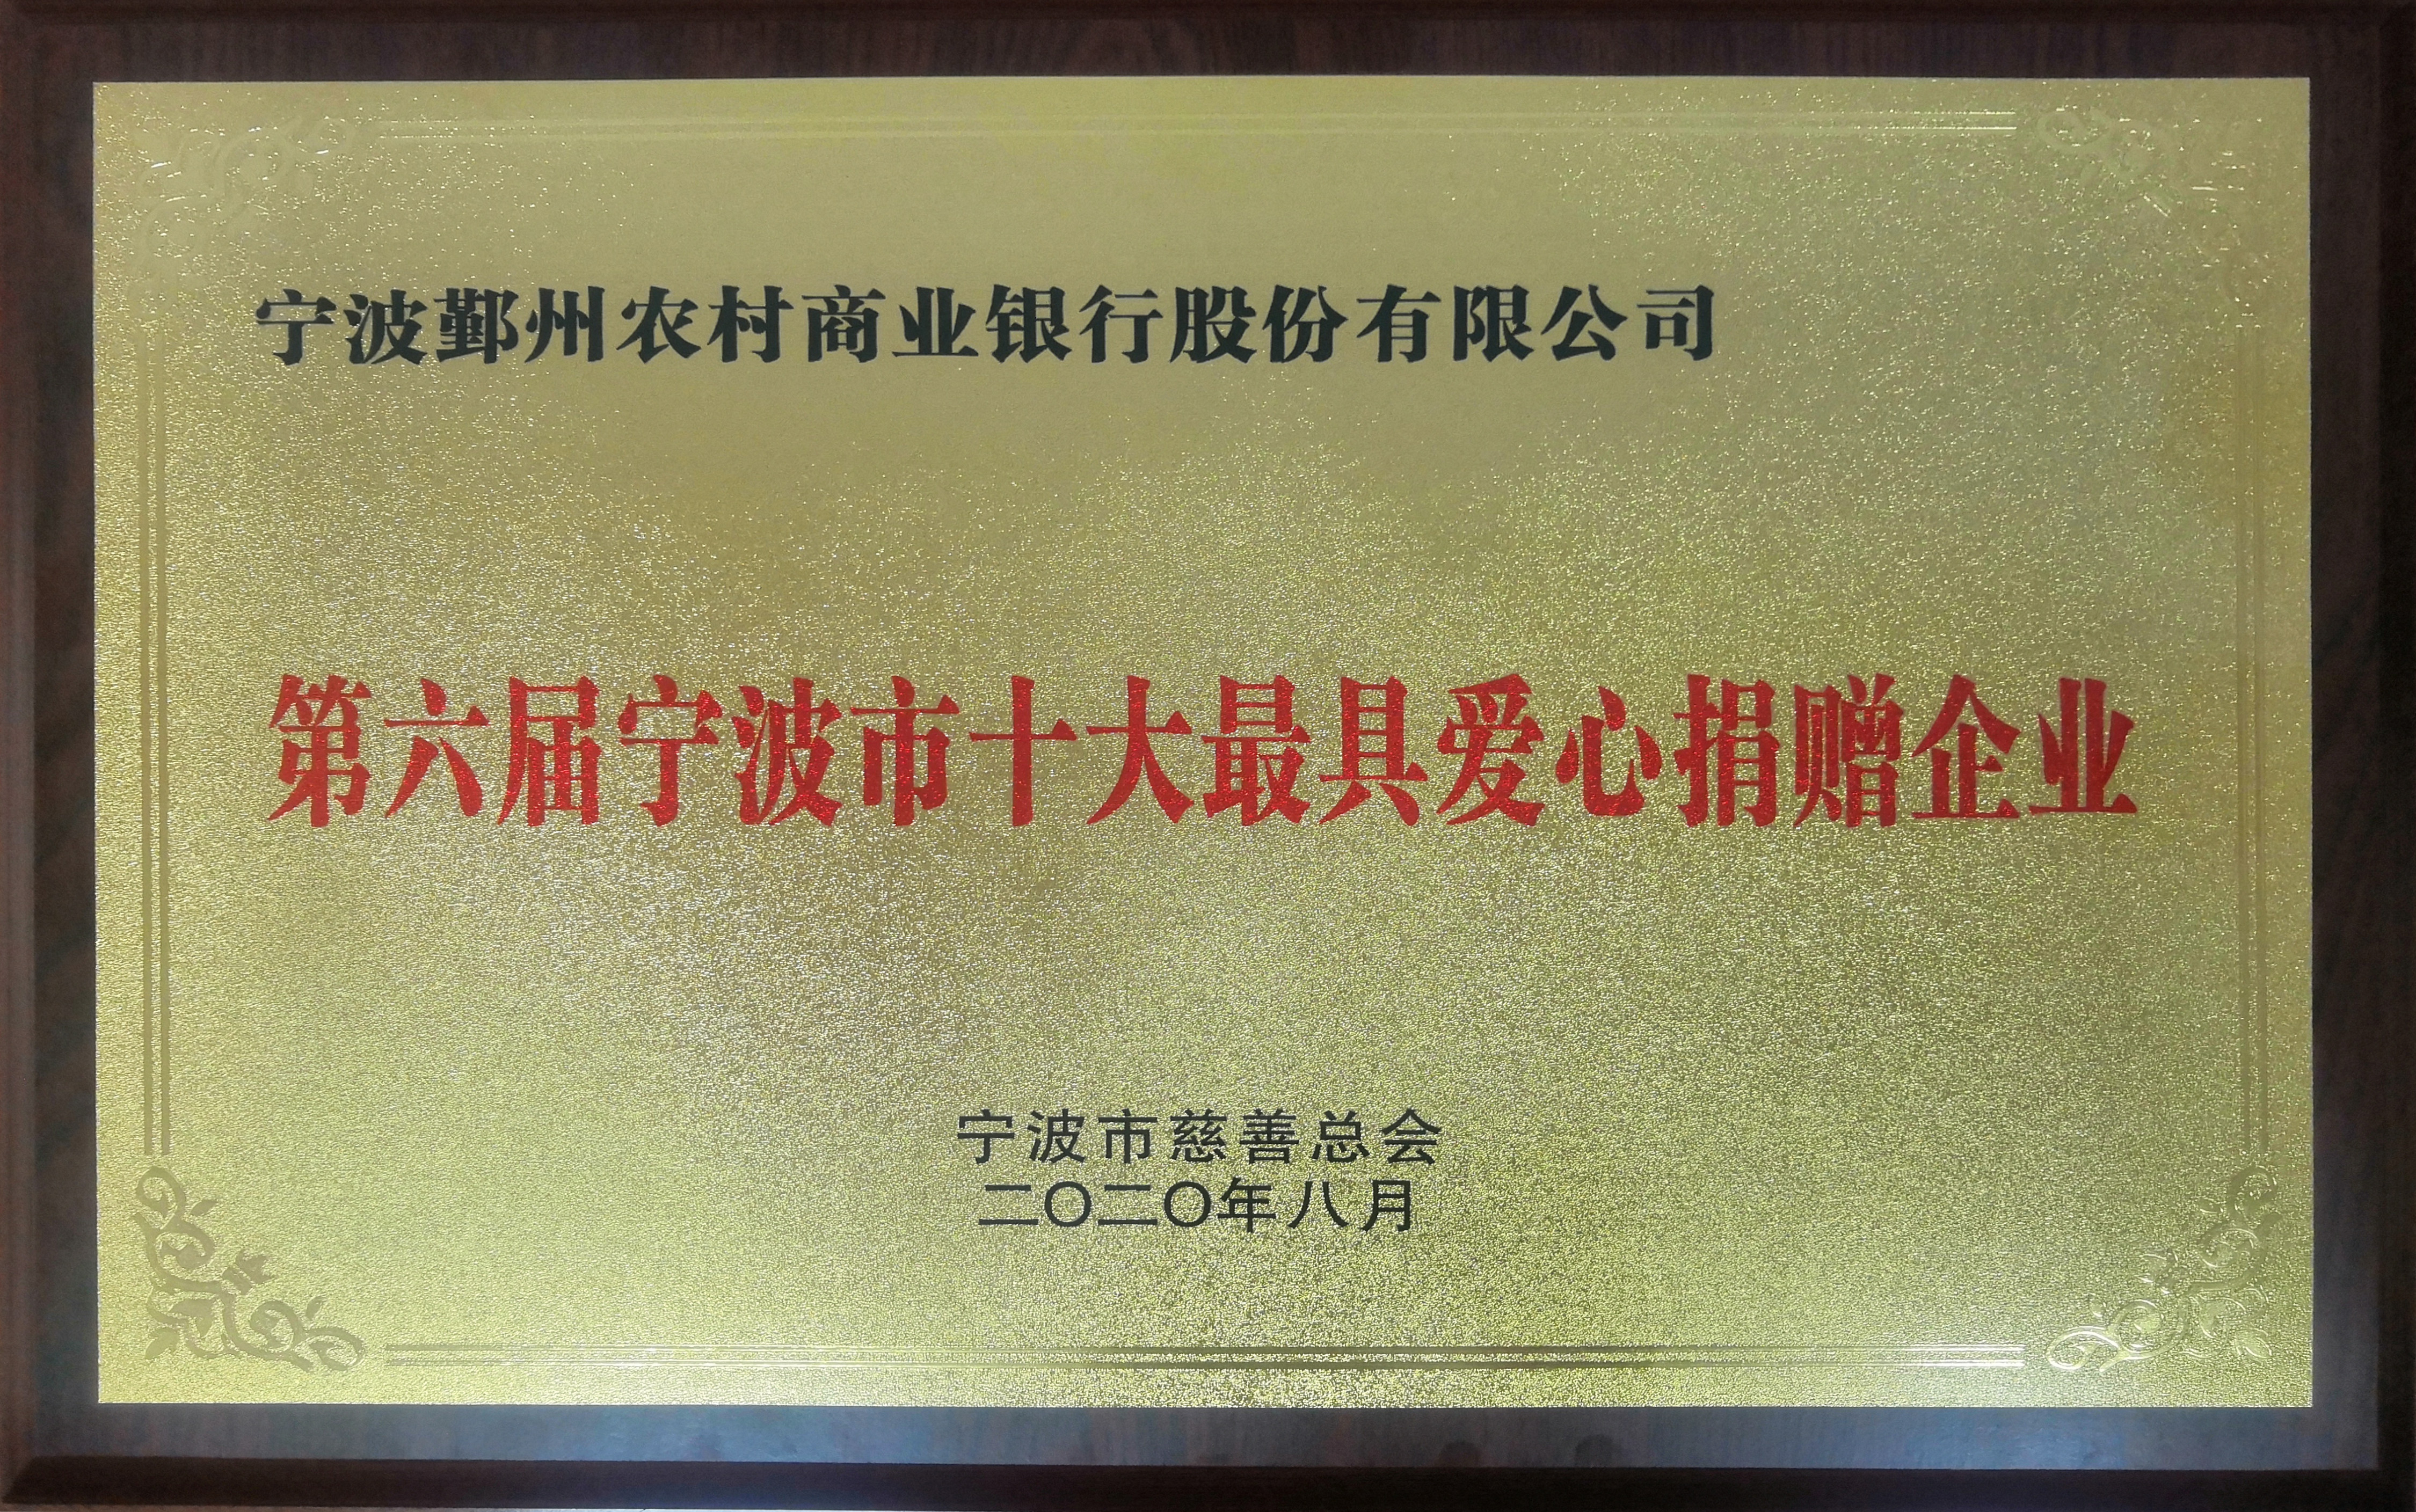 鄞州银行荣获第六届宁波市“十大最具爱心捐赠企业”称号